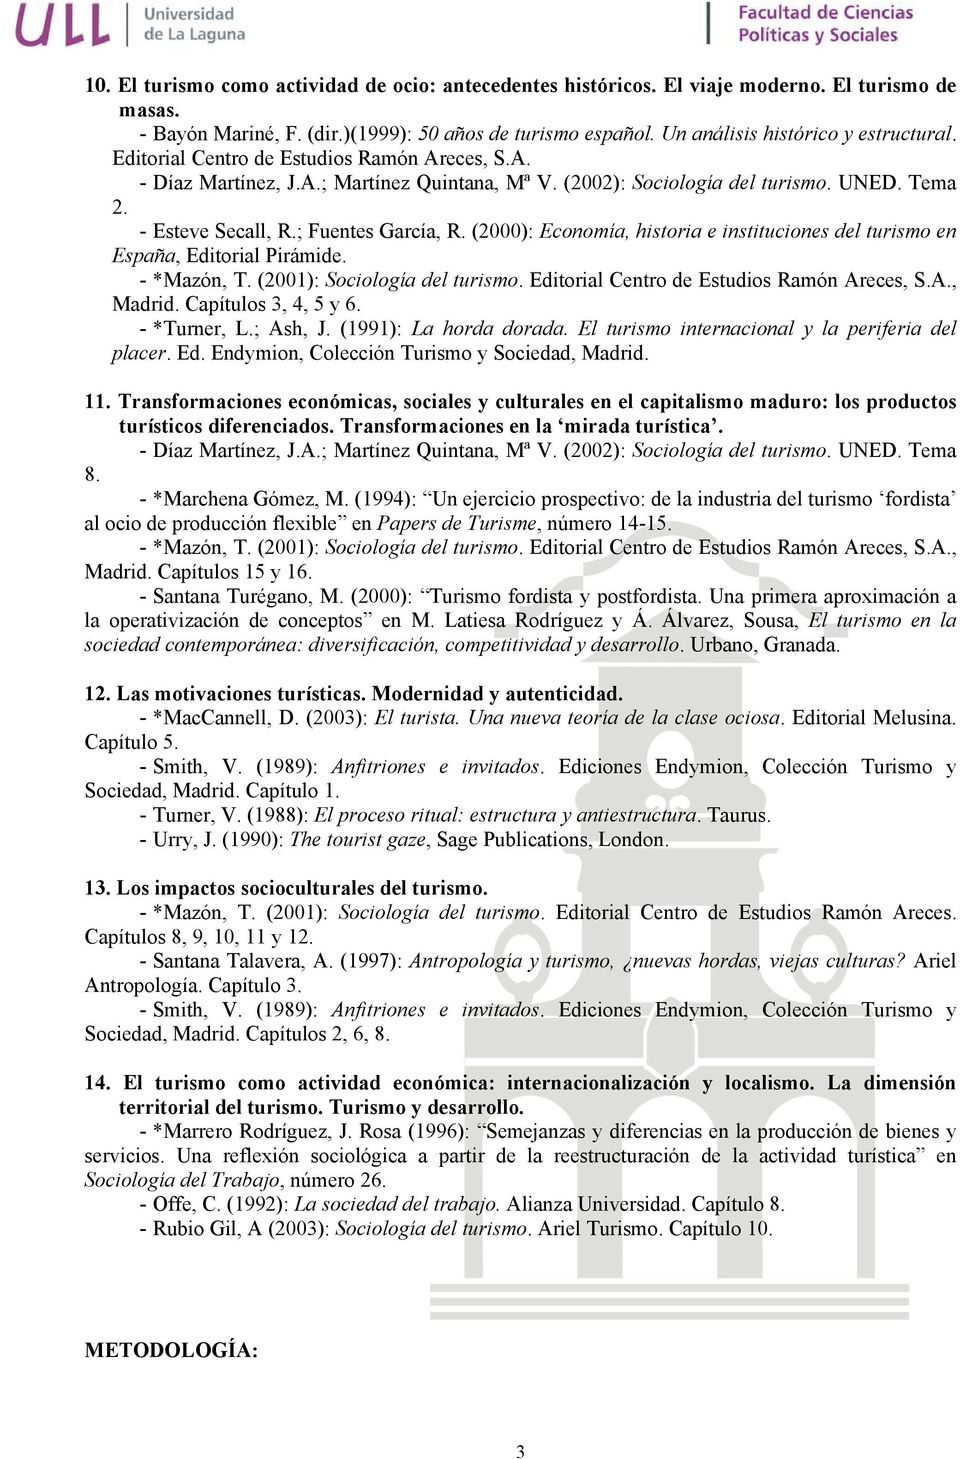 (2000): Economía, historia e instituciones del turismo en España, Editorial Pirámide. Madrid. Capítulos 3, 4, 5 y 6. - *Turner, L.; Ash, J. (1991): La horda dorada.